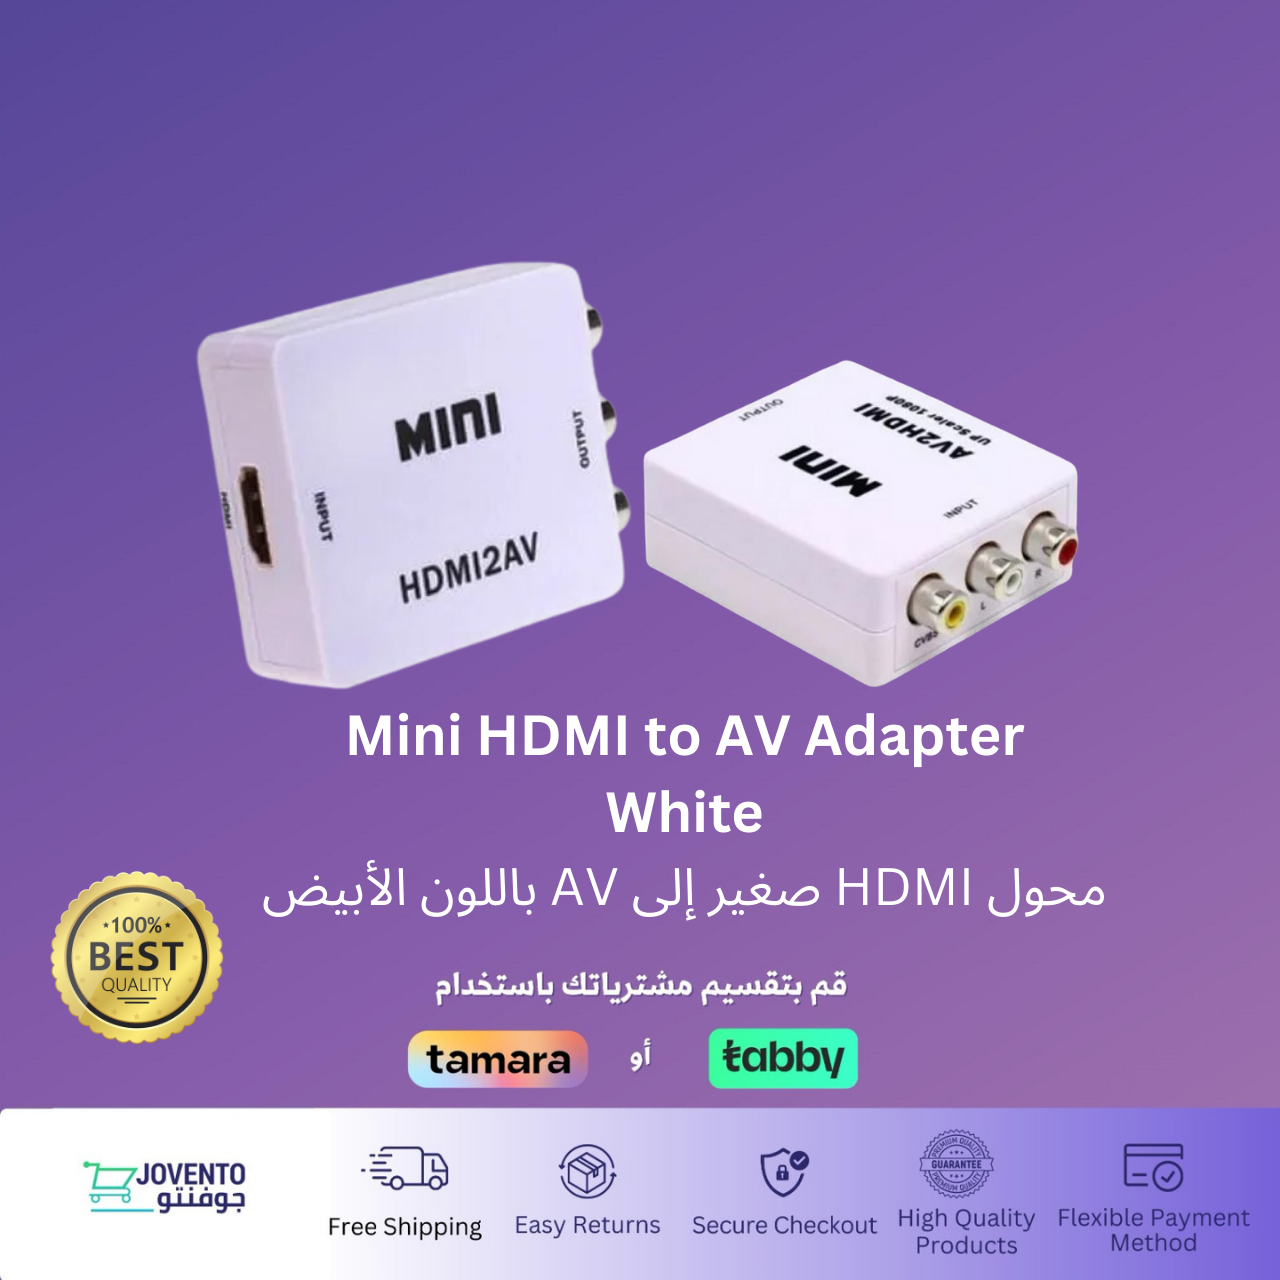 Mini HDMI to AV Converter Adapter - White